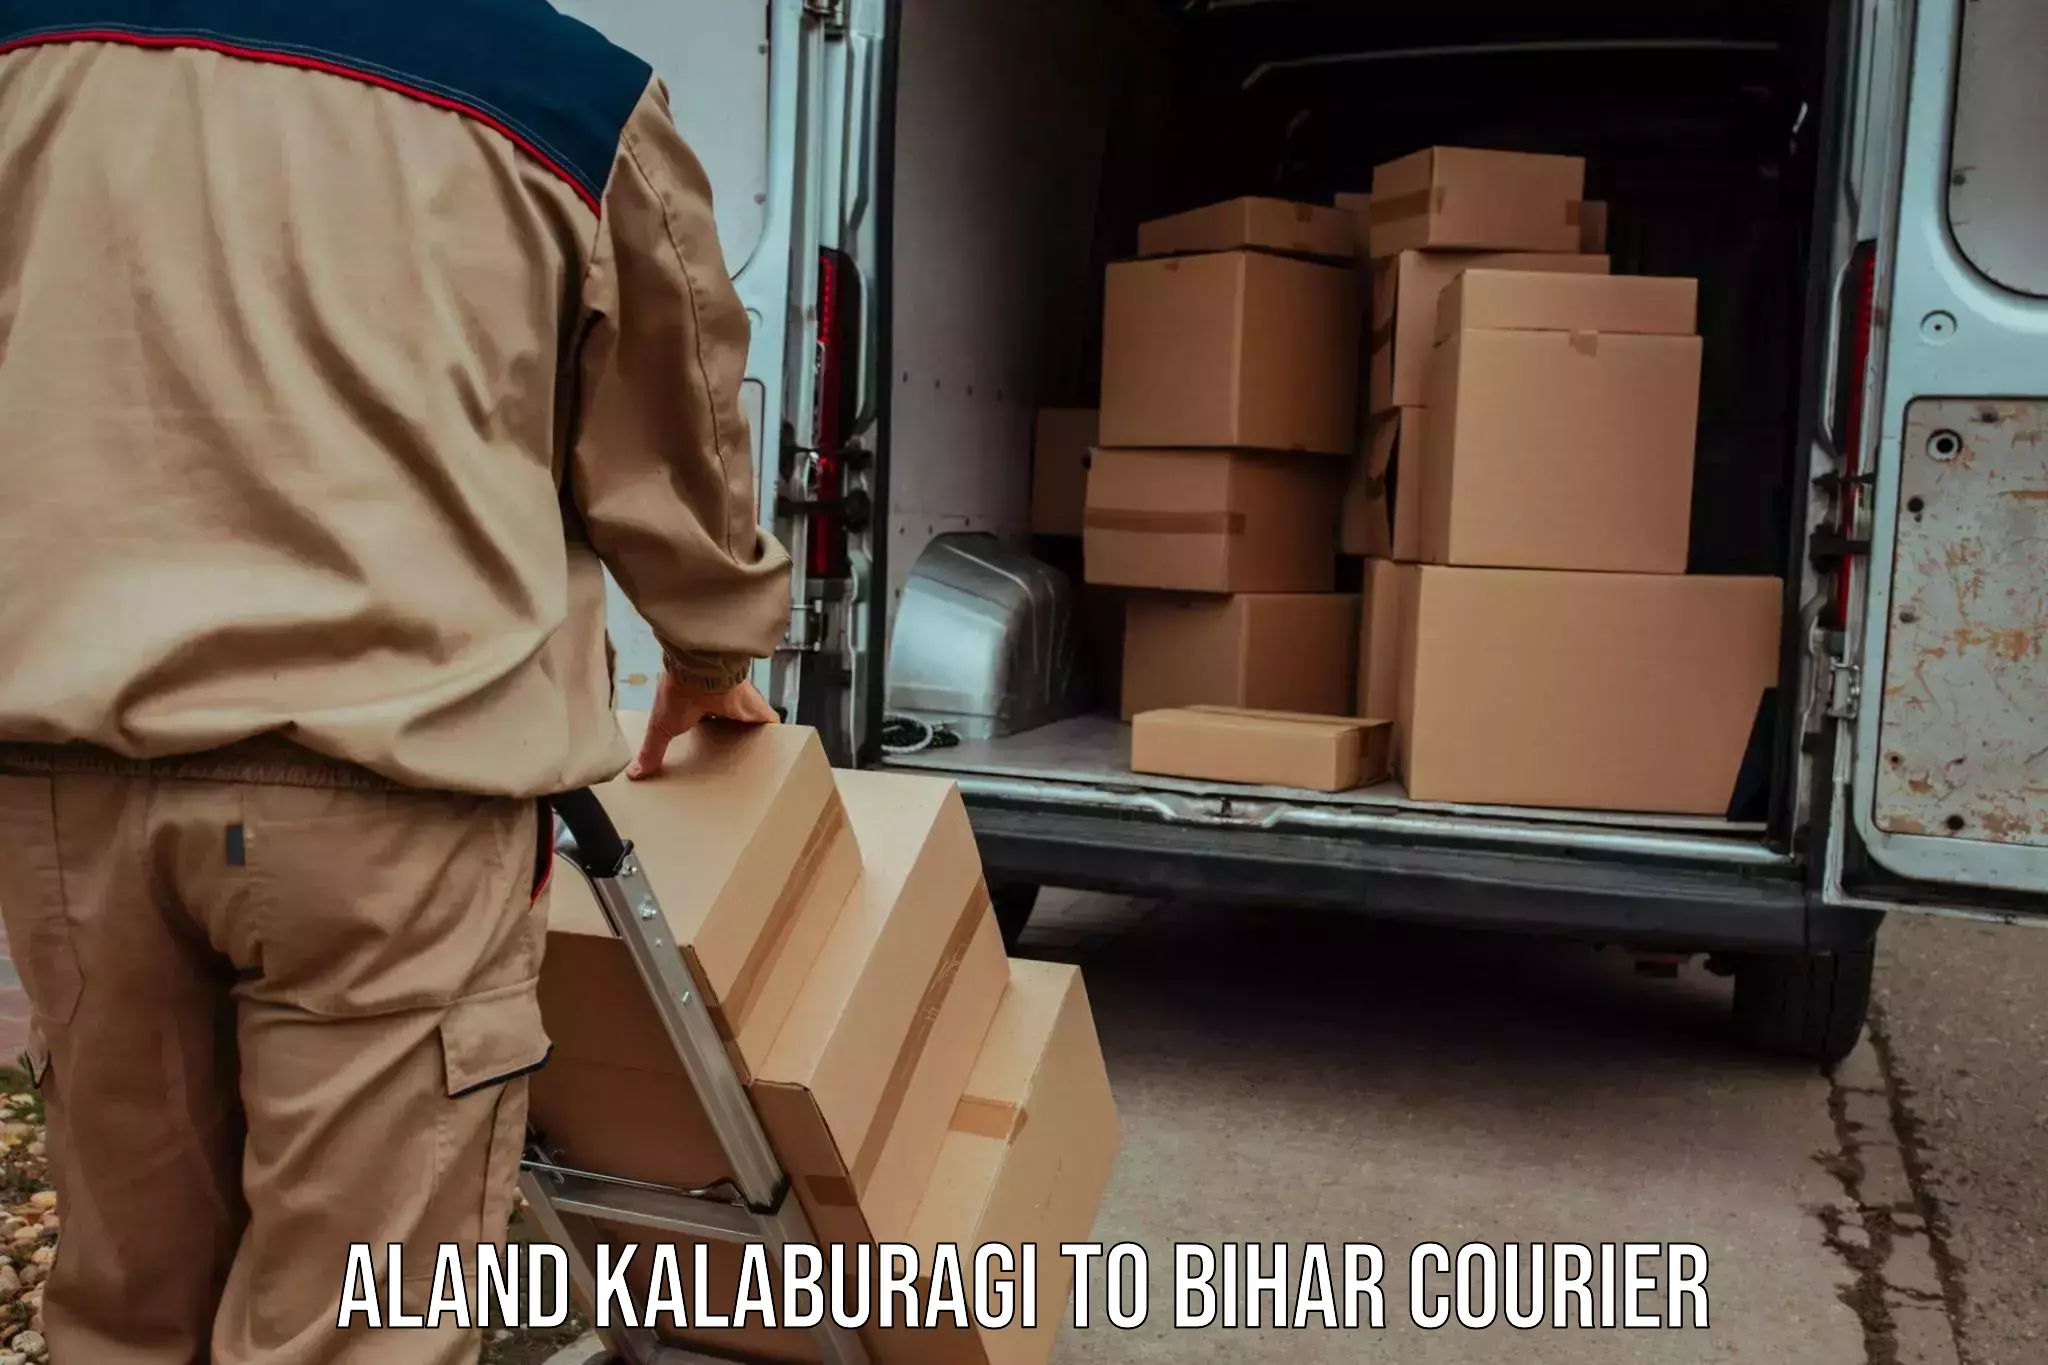 Global freight services Aland Kalaburagi to Bihar